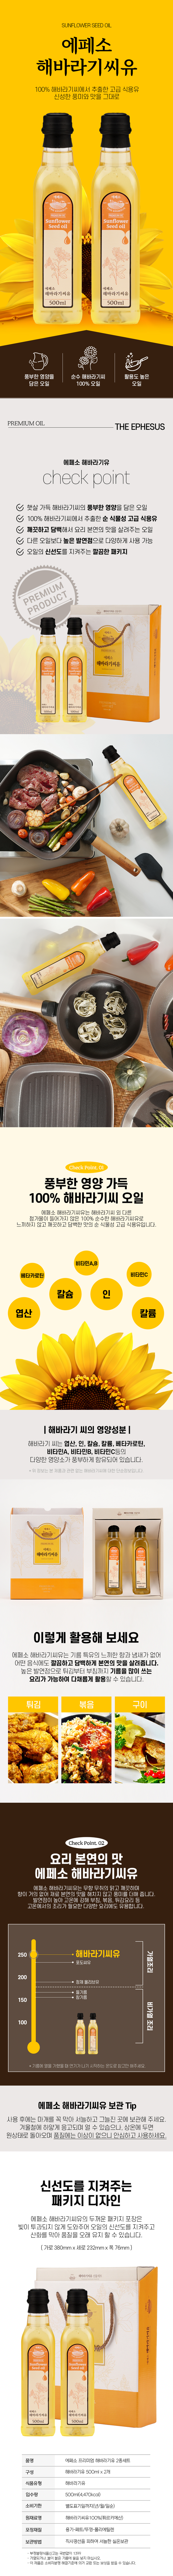 sunflower-seed-oil.jpg